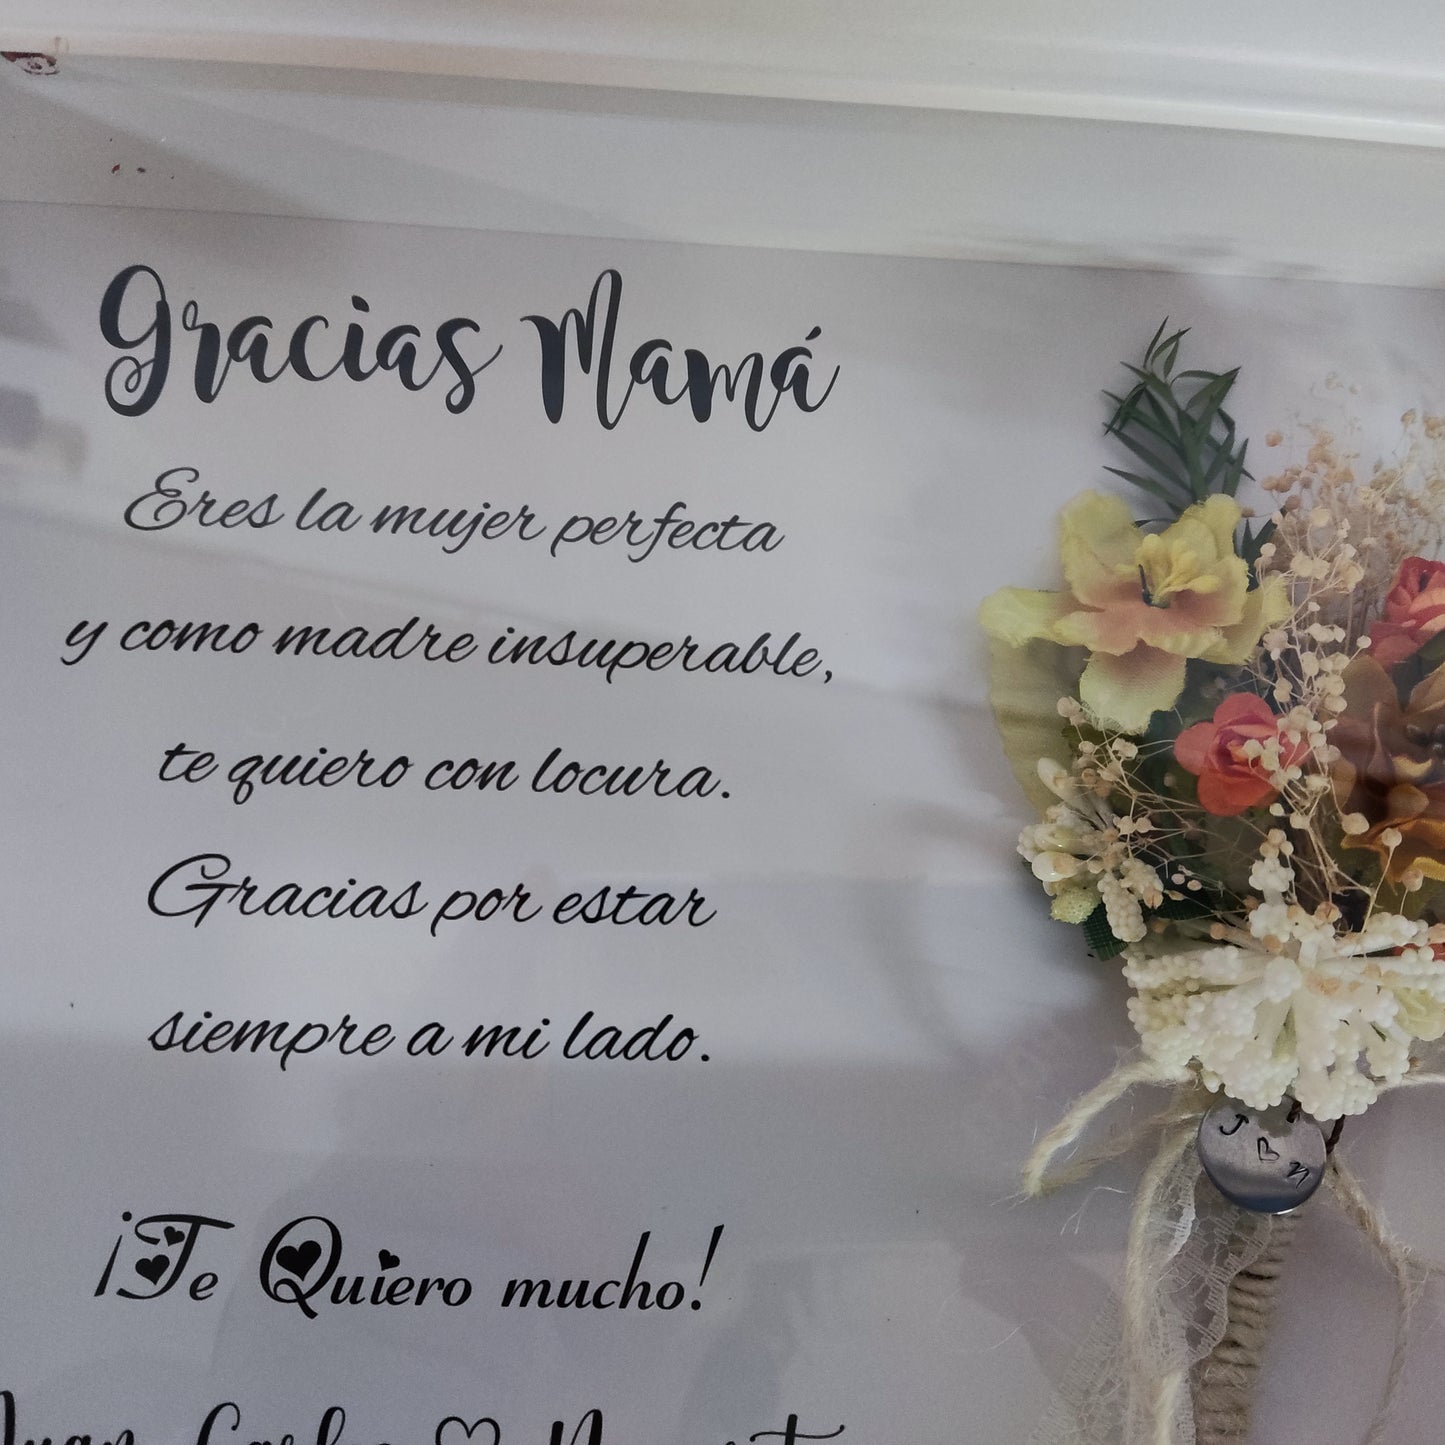 Marco y Lámina para madres/abuelas/tías/ testigos, etc.. con ramillete de flores